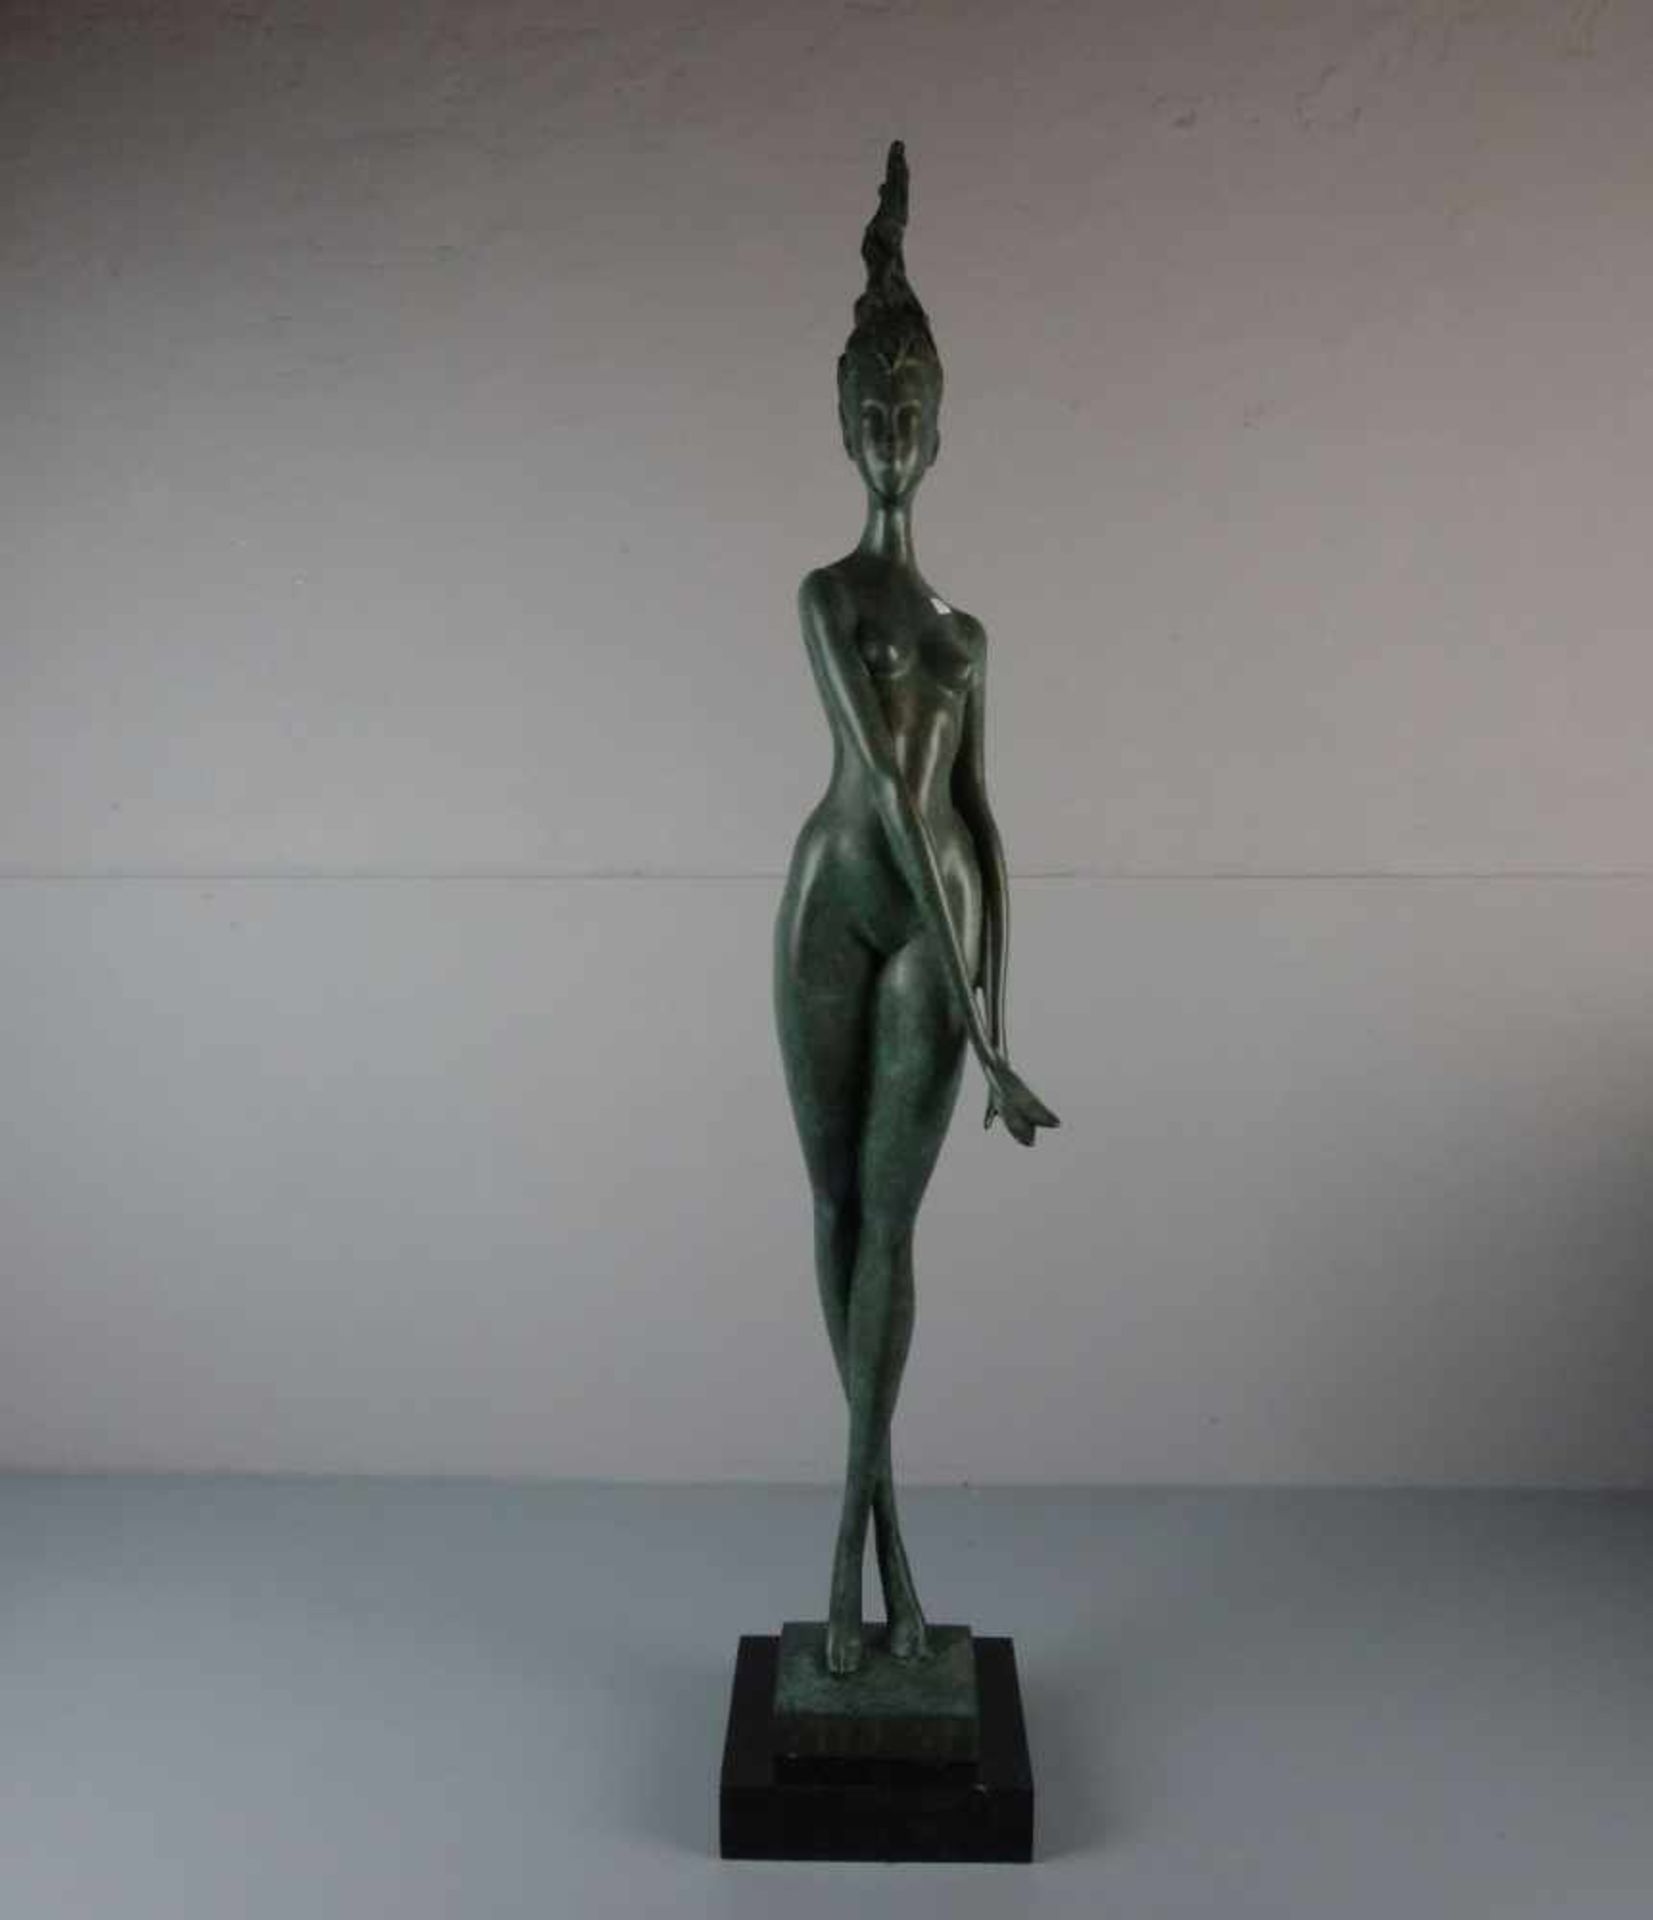 ALIOTH, J. P. (20./21. Jh.), Skulptur / sculpture: "Daphne", Bronze, grün patiniert, auf der Plinthe